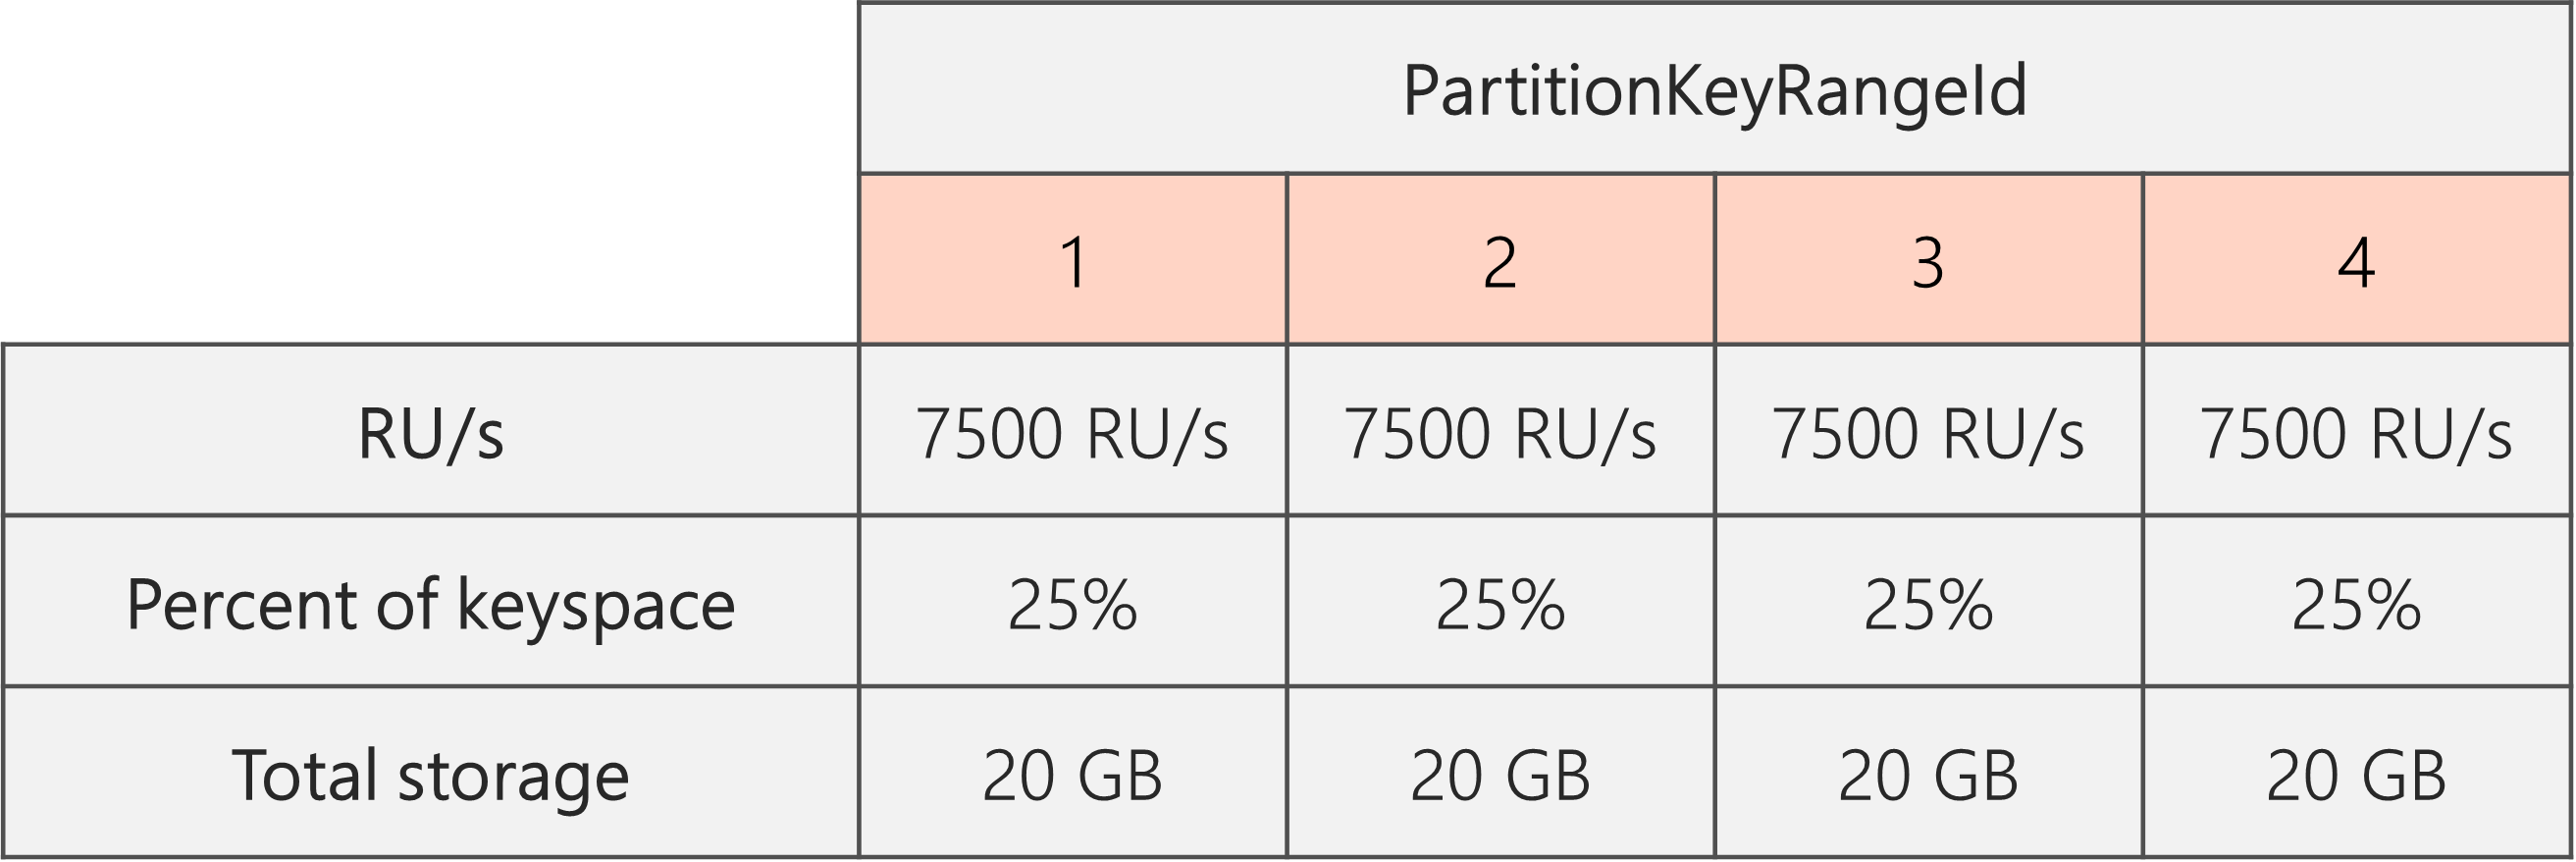 После завершения разделения и уменьшения количества ЕЗ с 40 000 ЕЗ до 30 000 ЕЗ остается 4 PartitionKeyRangeId, каждый с 7500 ЕЗ и 25 % от общего пространства ключей (20 ГБ)